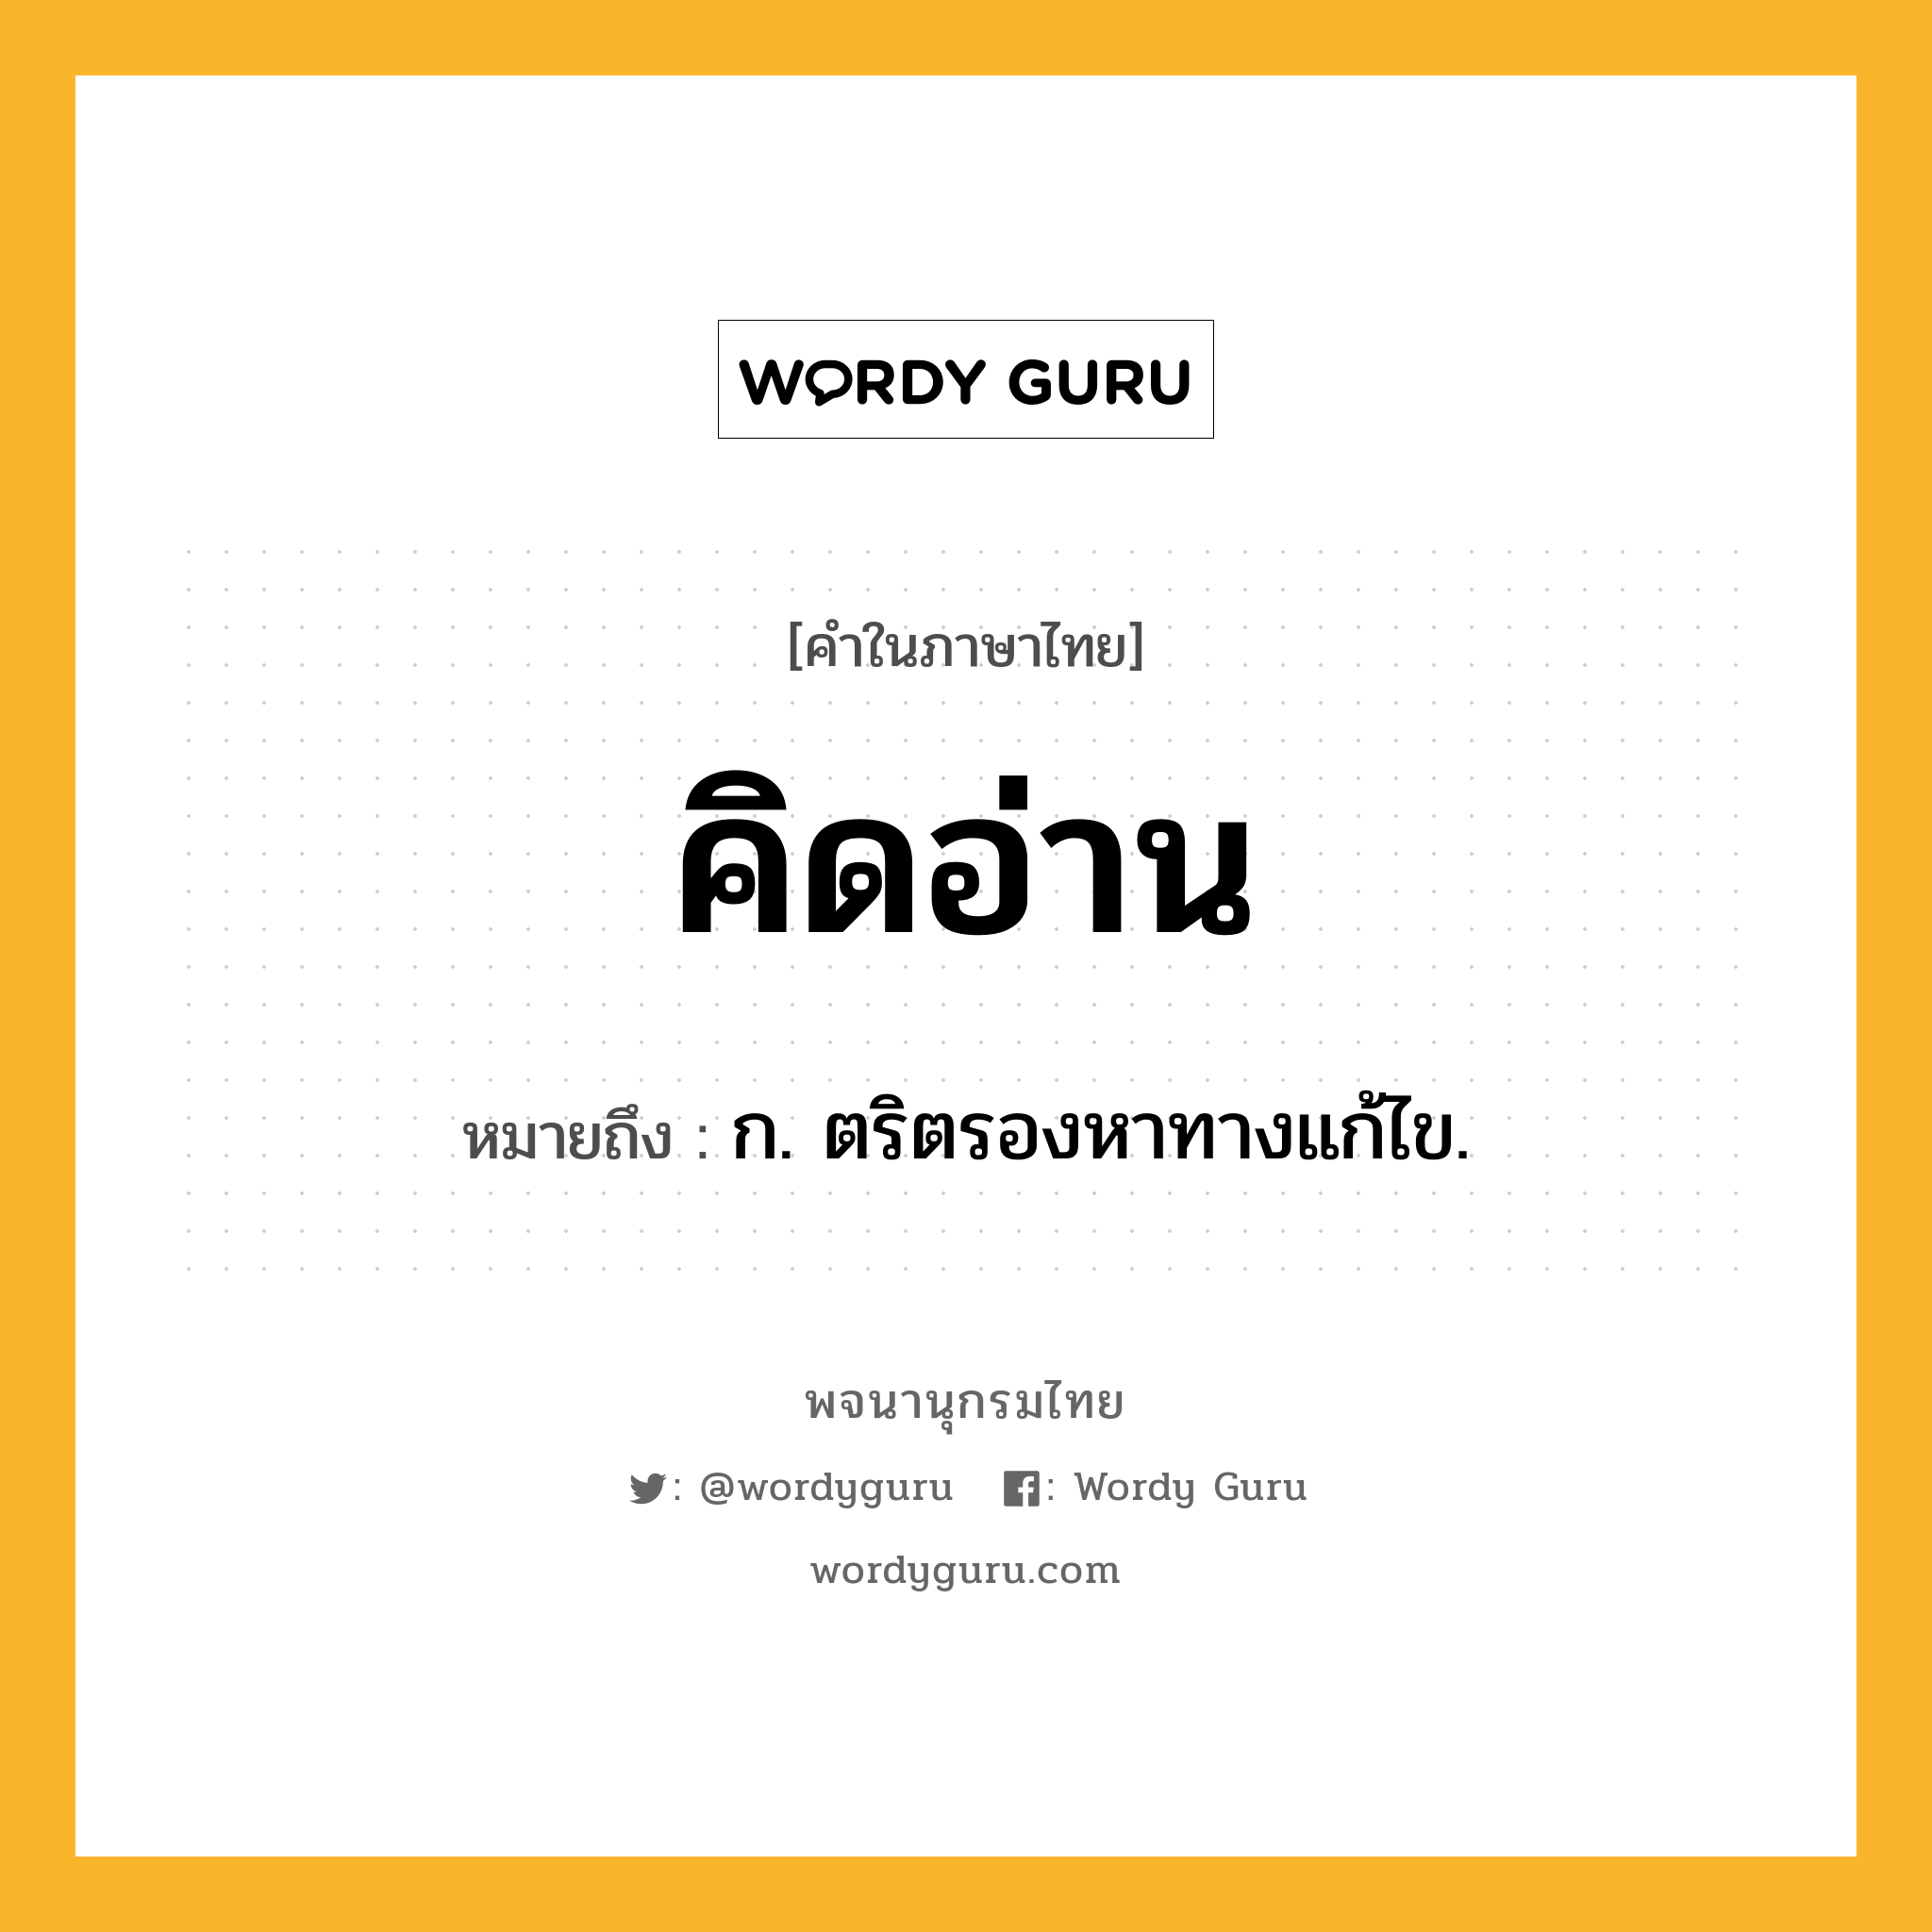 คิดอ่าน หมายถึงอะไร?, คำในภาษาไทย คิดอ่าน หมายถึง ก. ตริตรองหาทางแก้ไข.